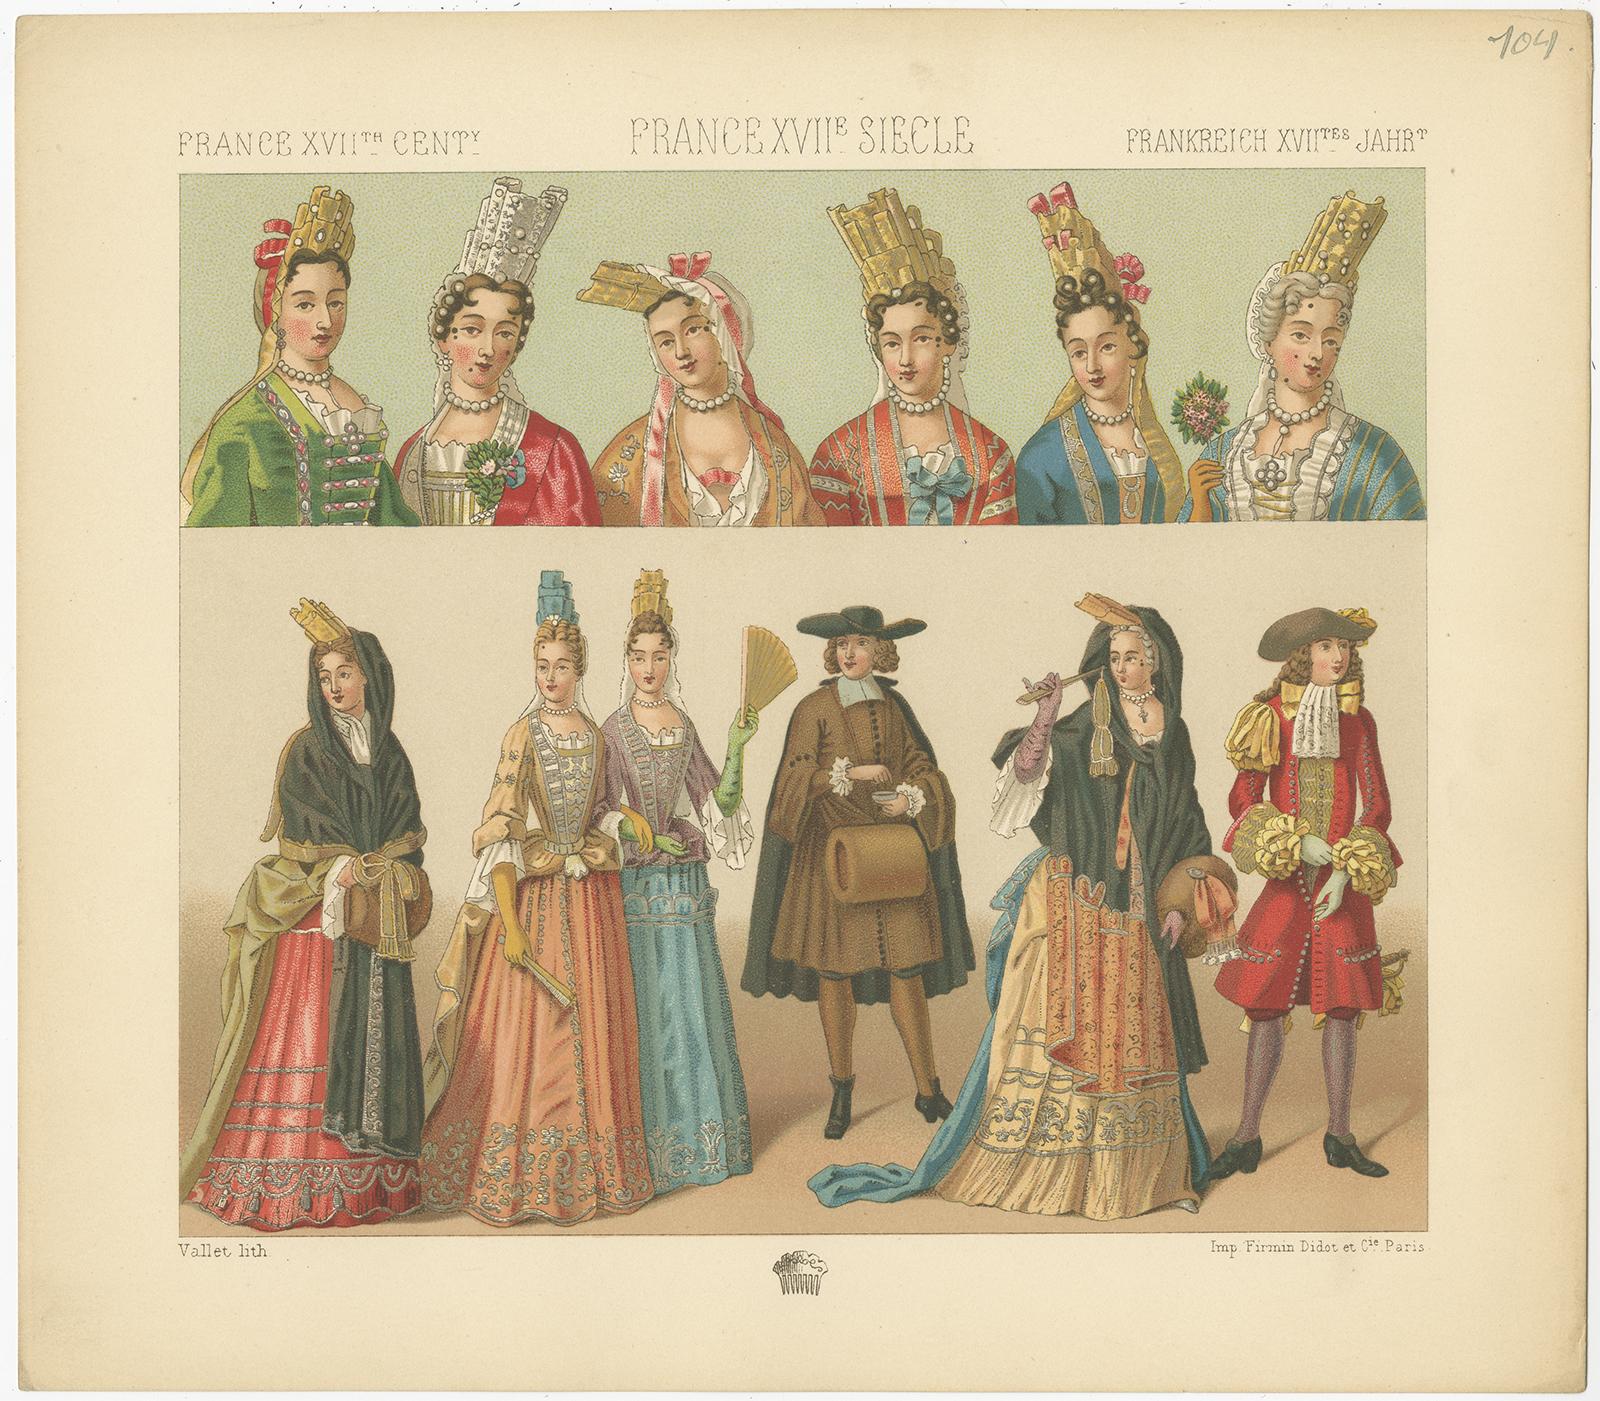 1700 french men's fashion